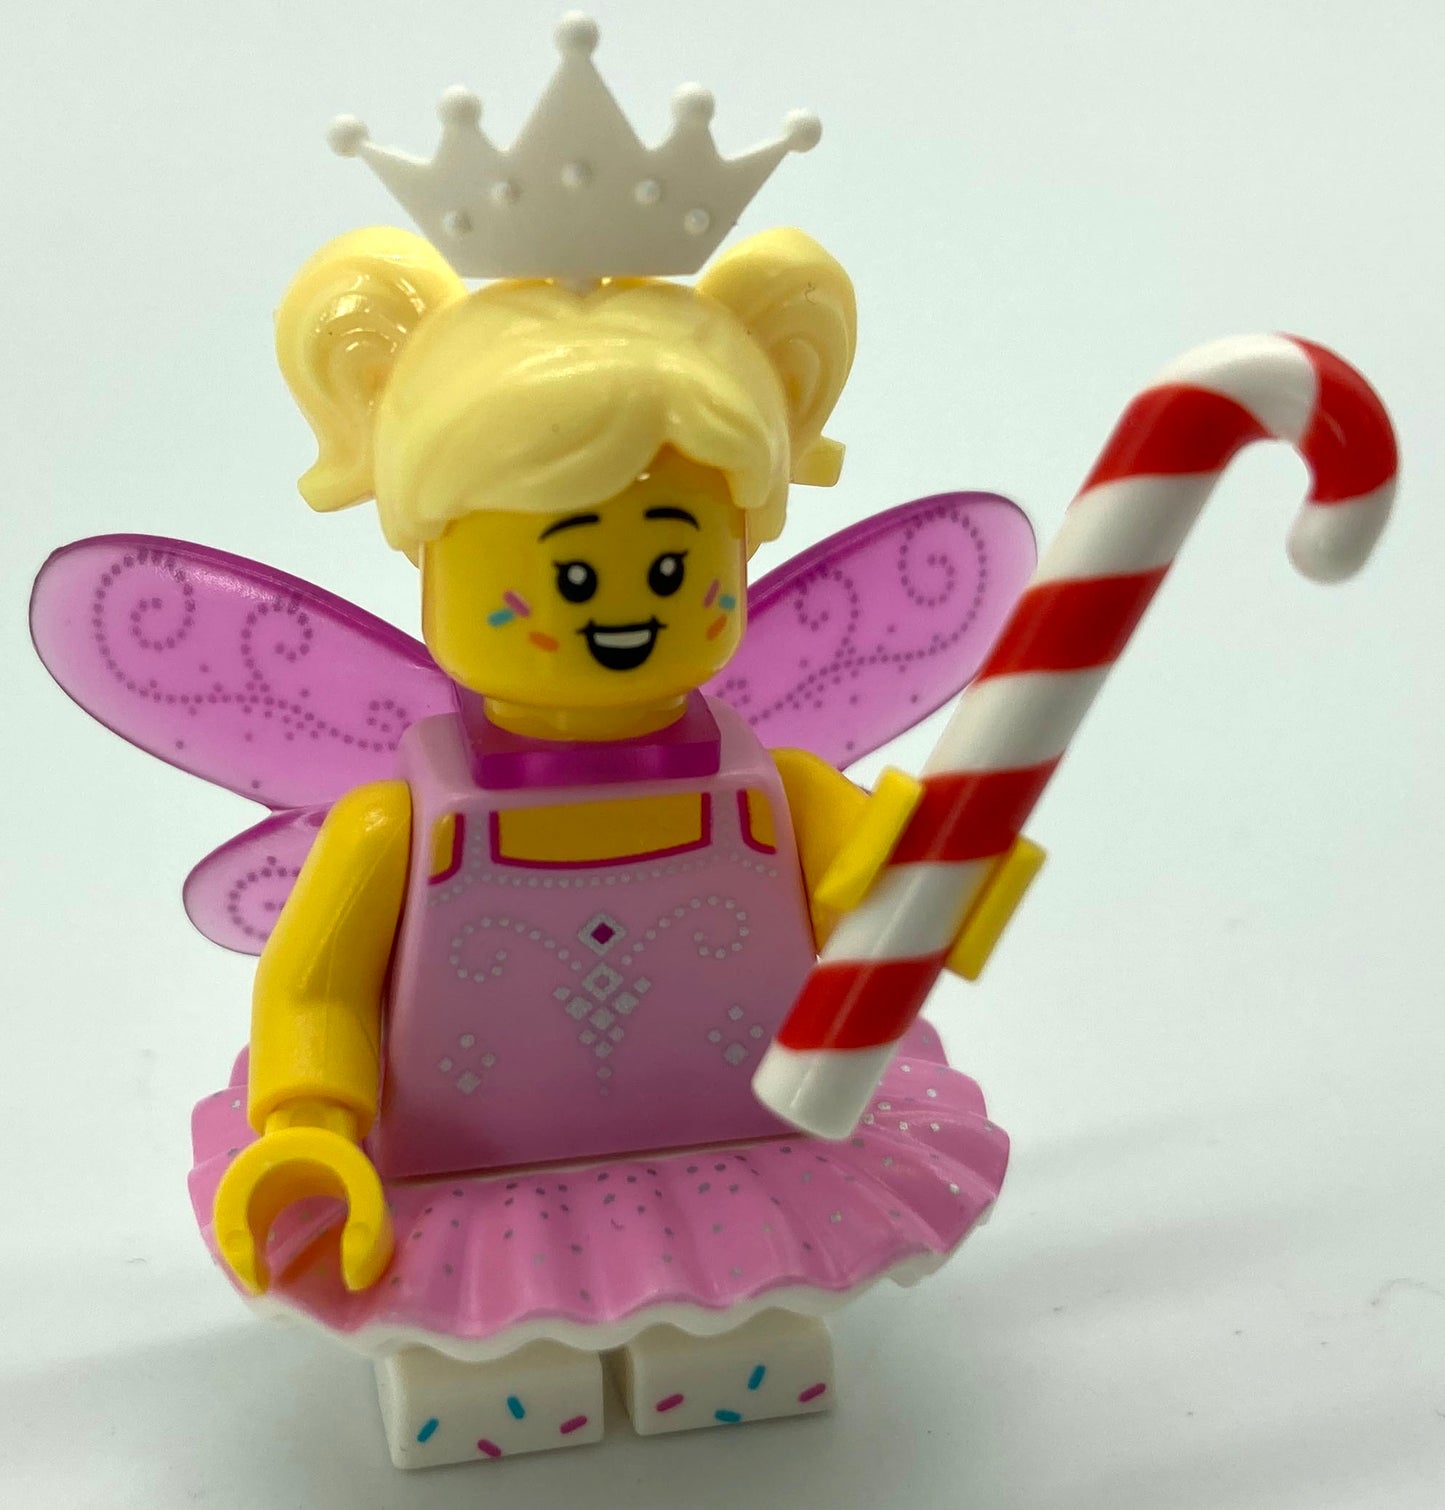 Series 23 - Sugar Fairy